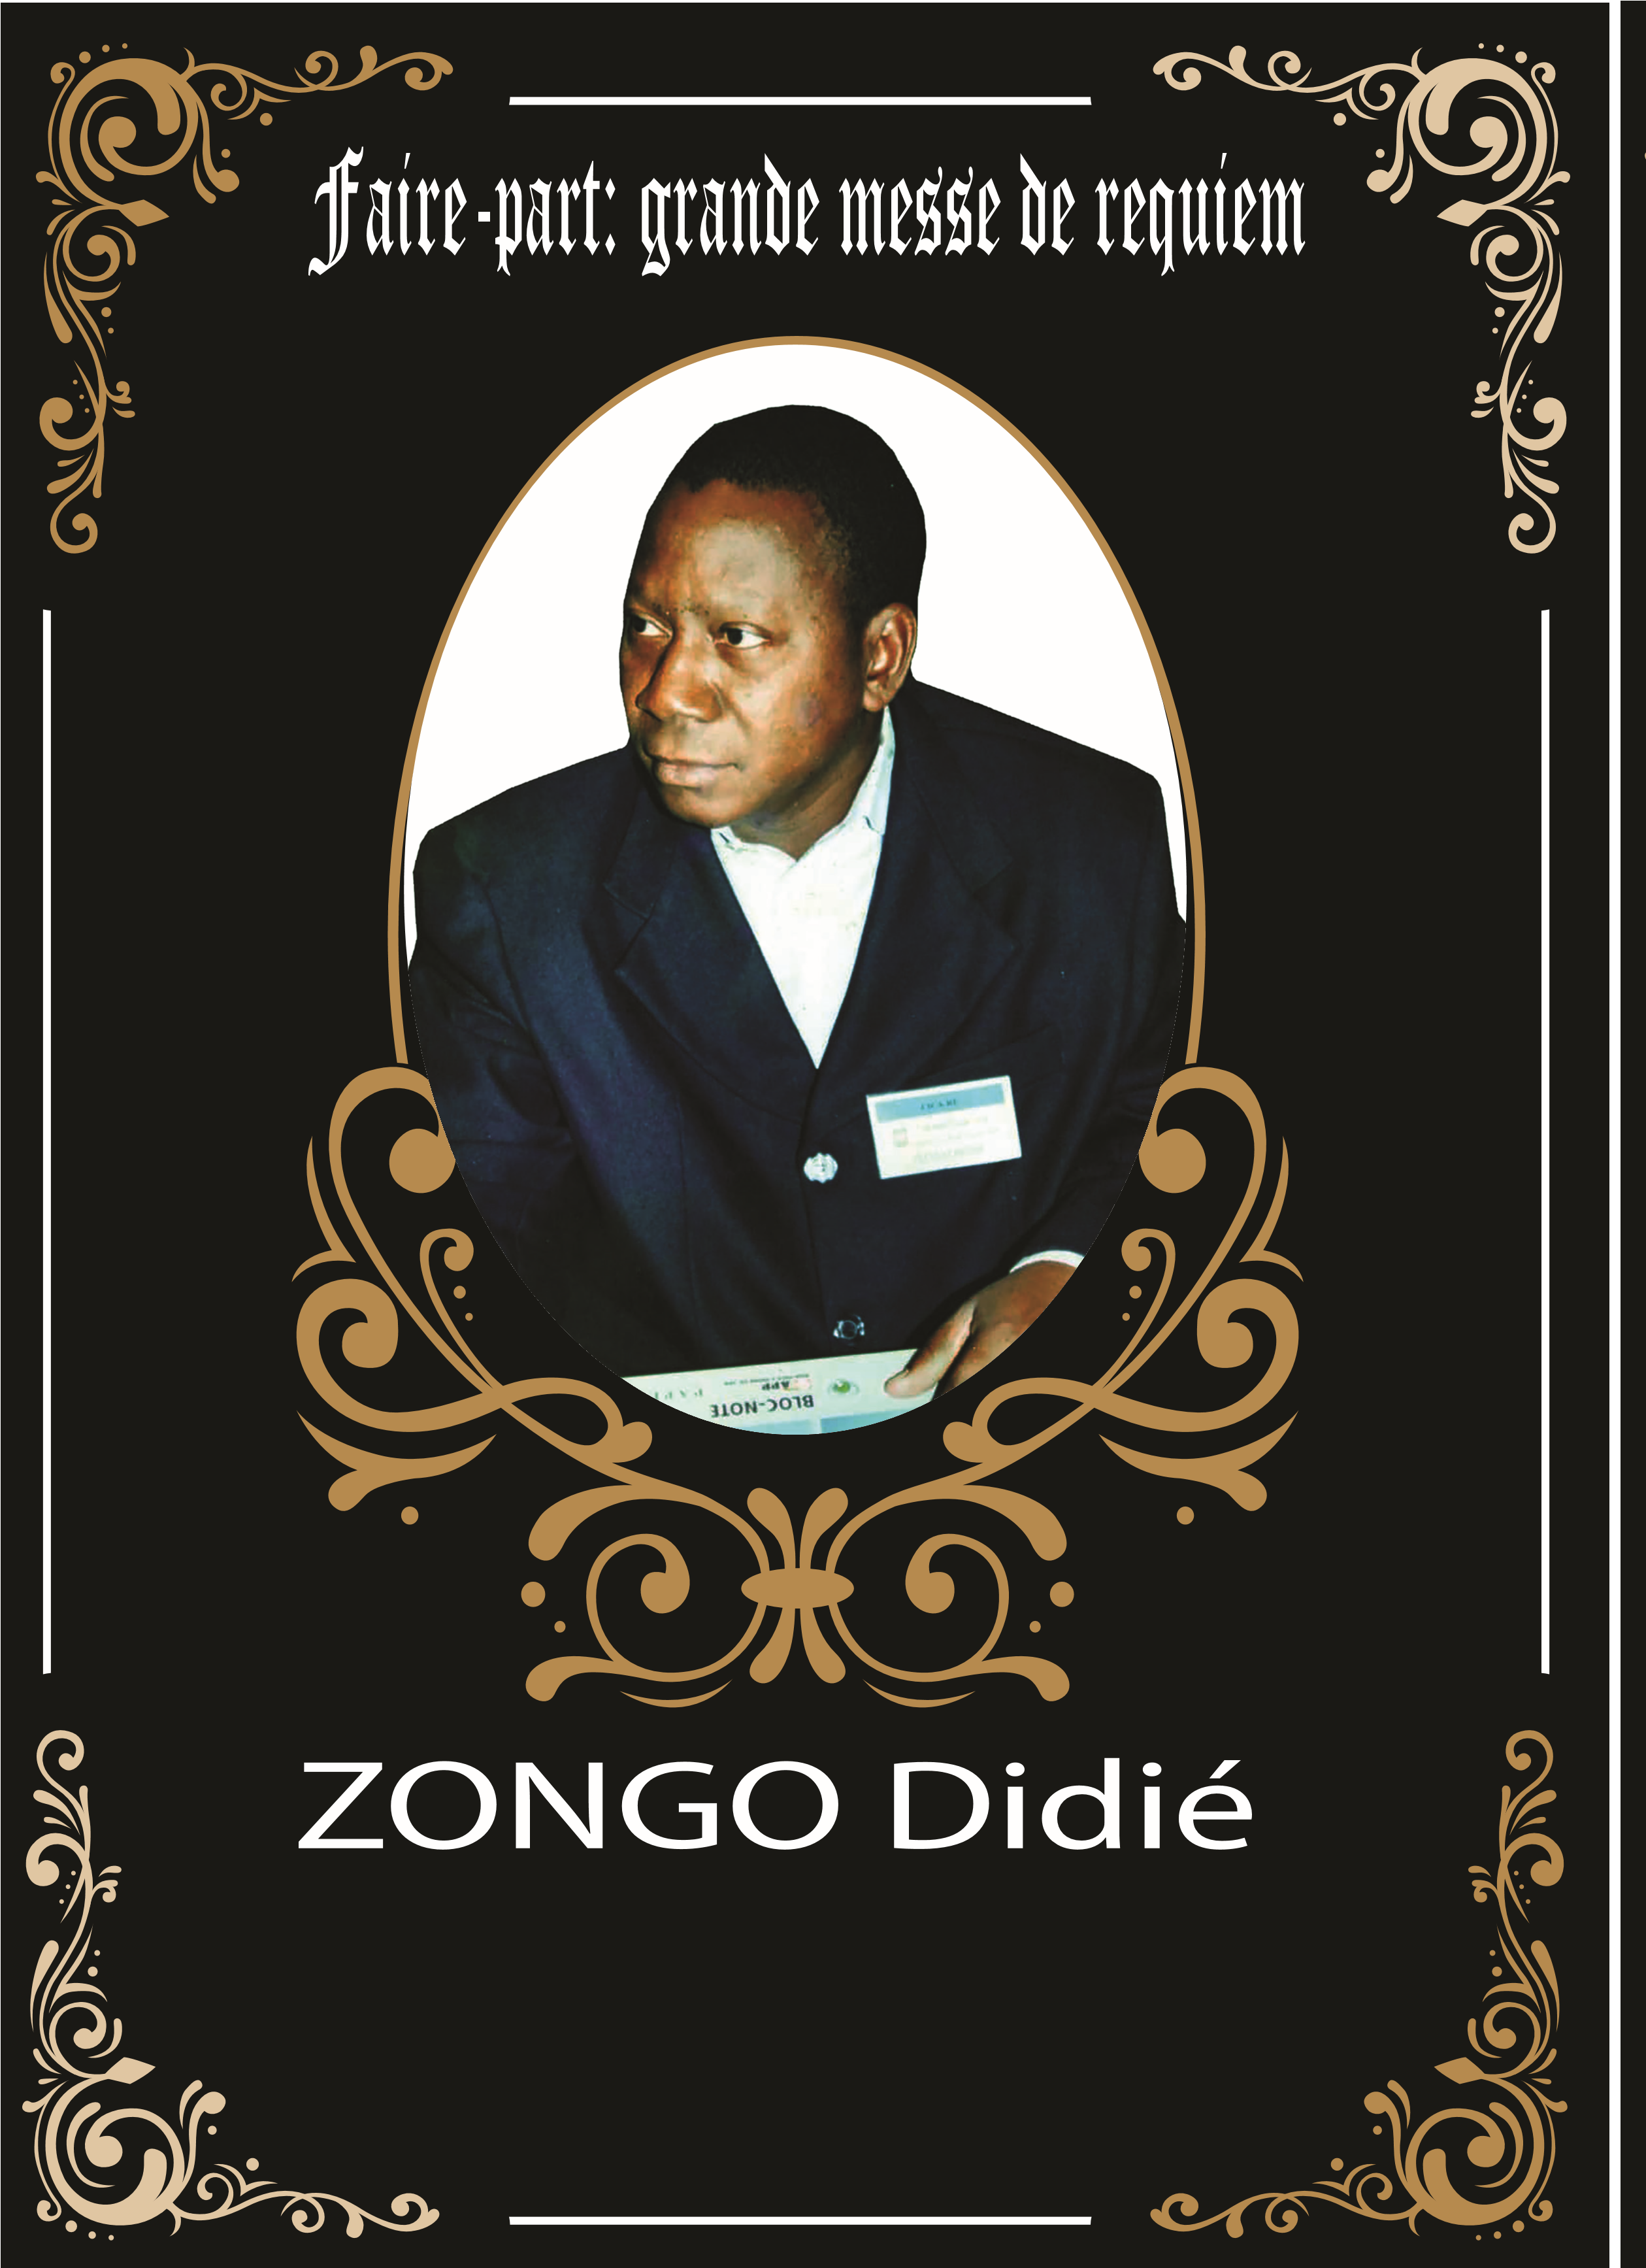 Décès de Zongo Didié : Faire part messe de requiem 